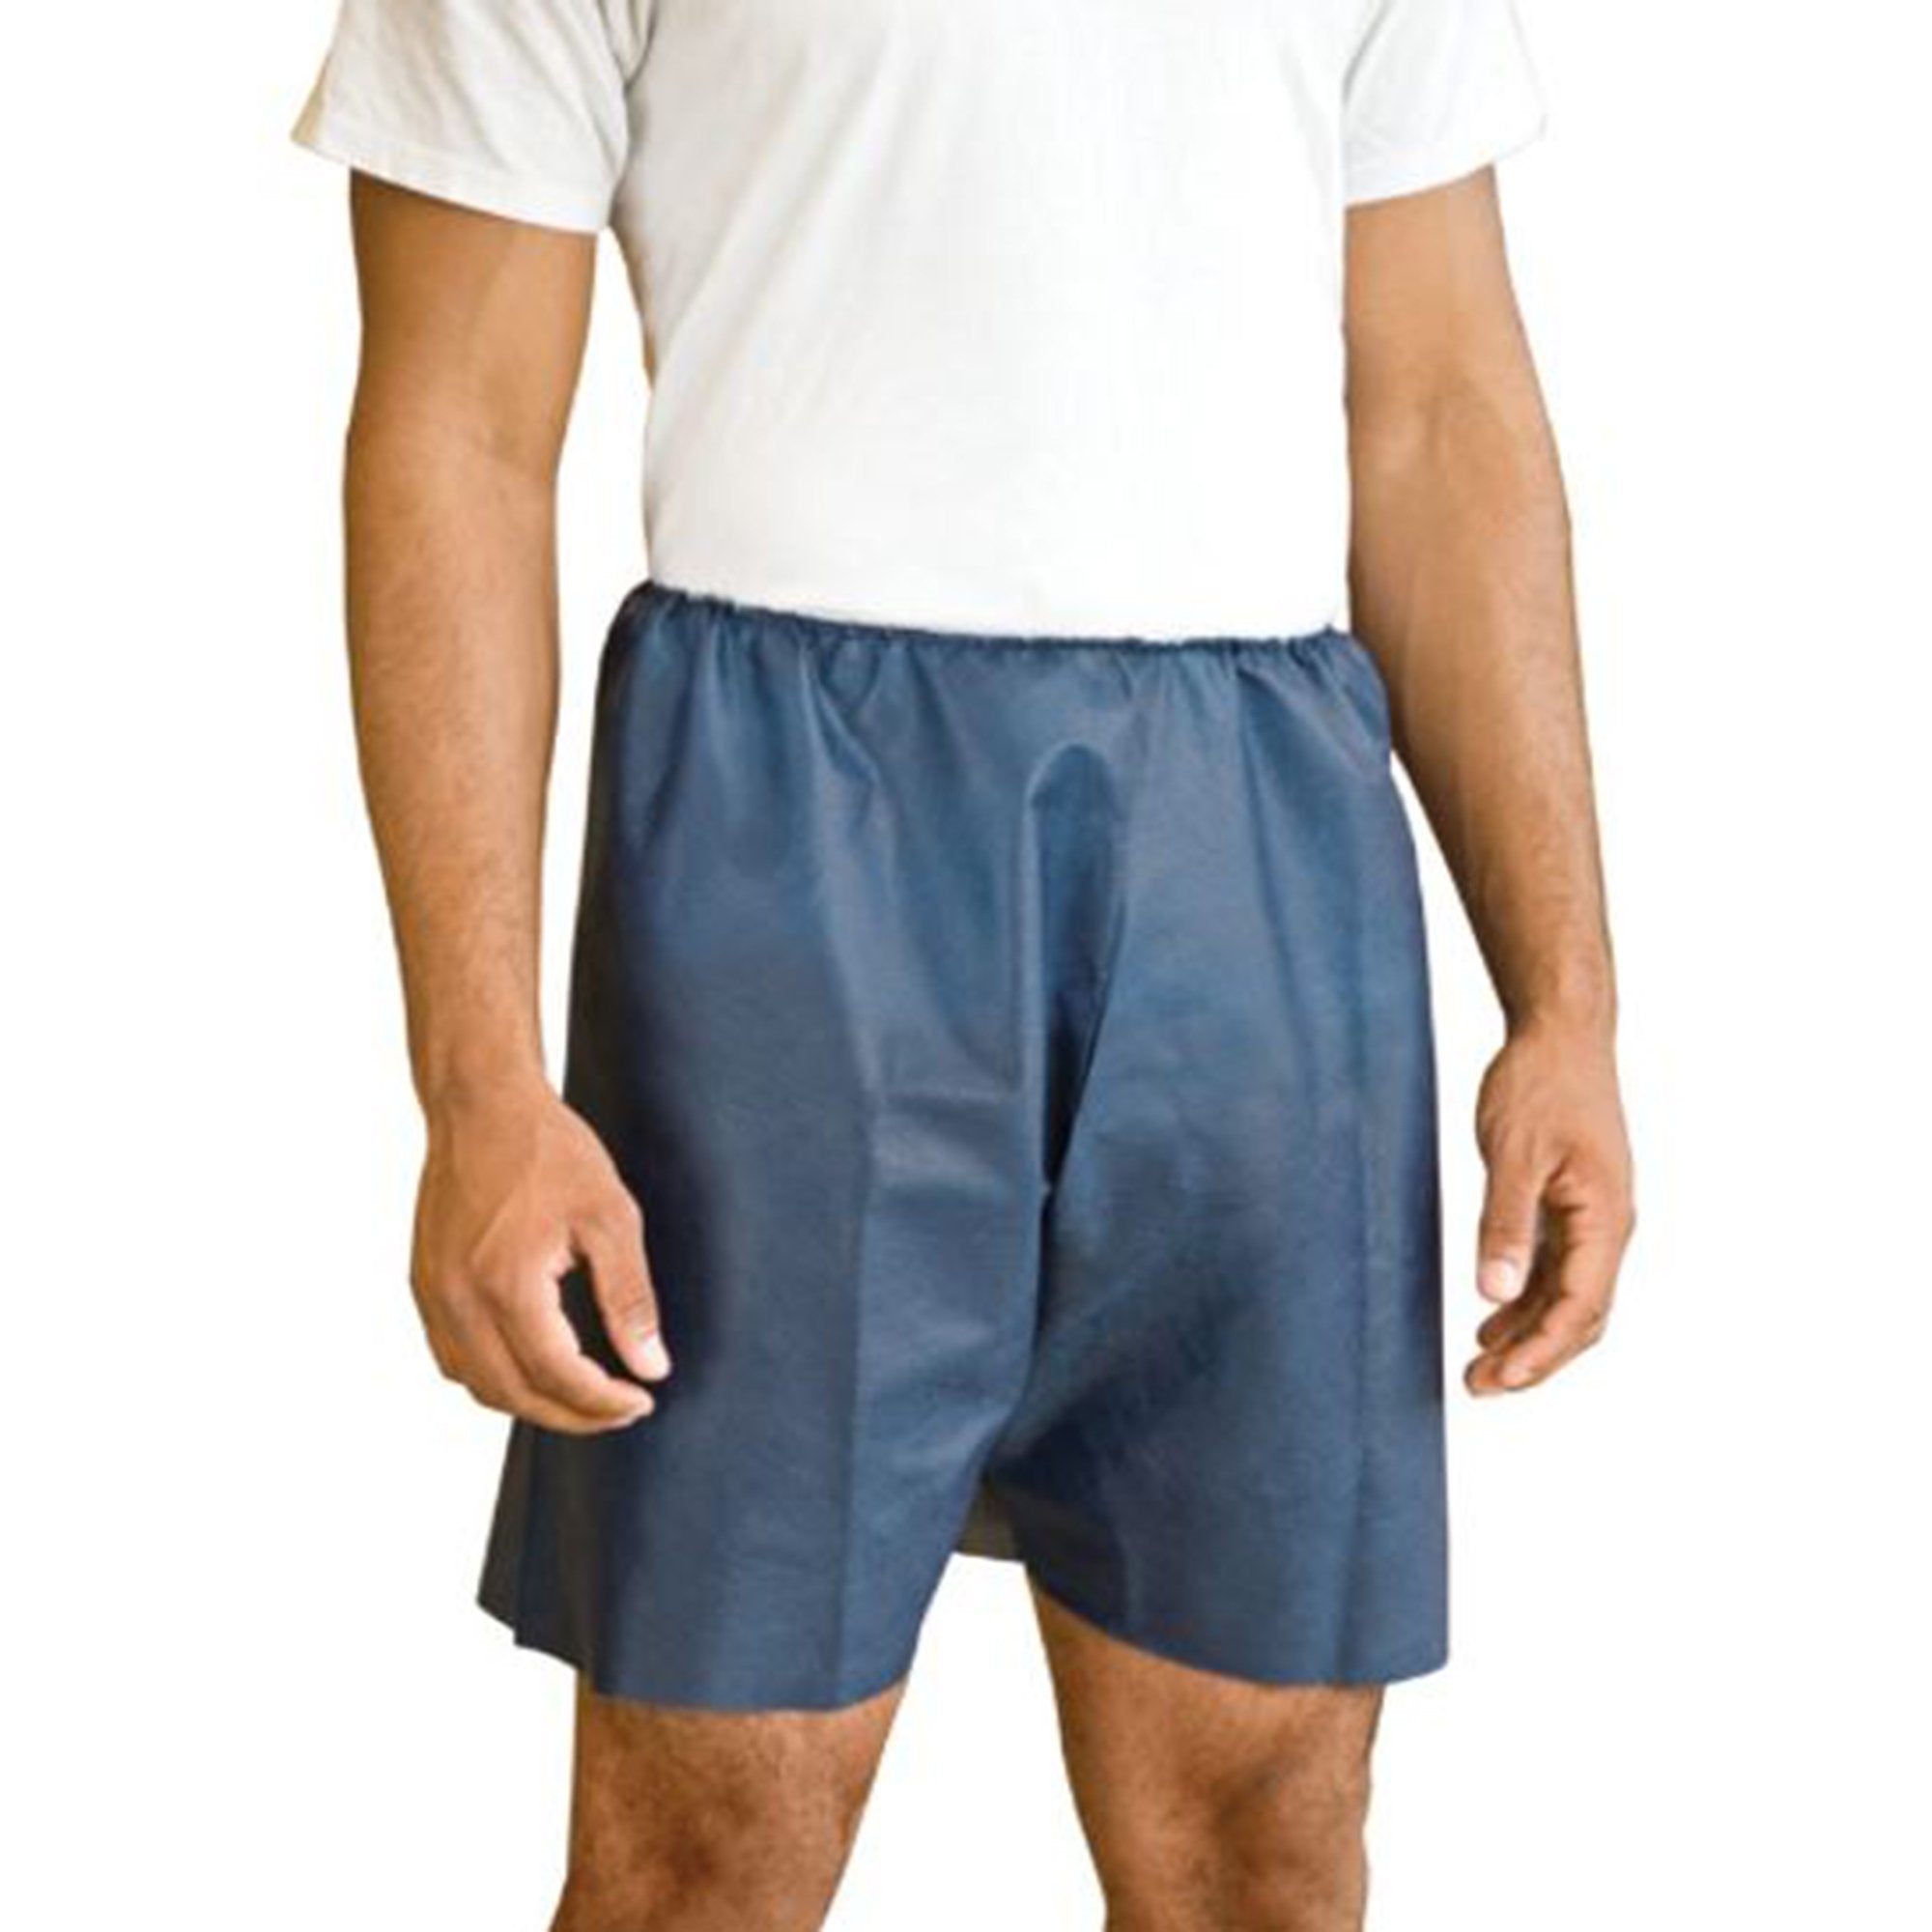 Exam Shorts MediShorts® 2X-Large / 3X-Large Navy Blue Nonwoven Adult Disposable